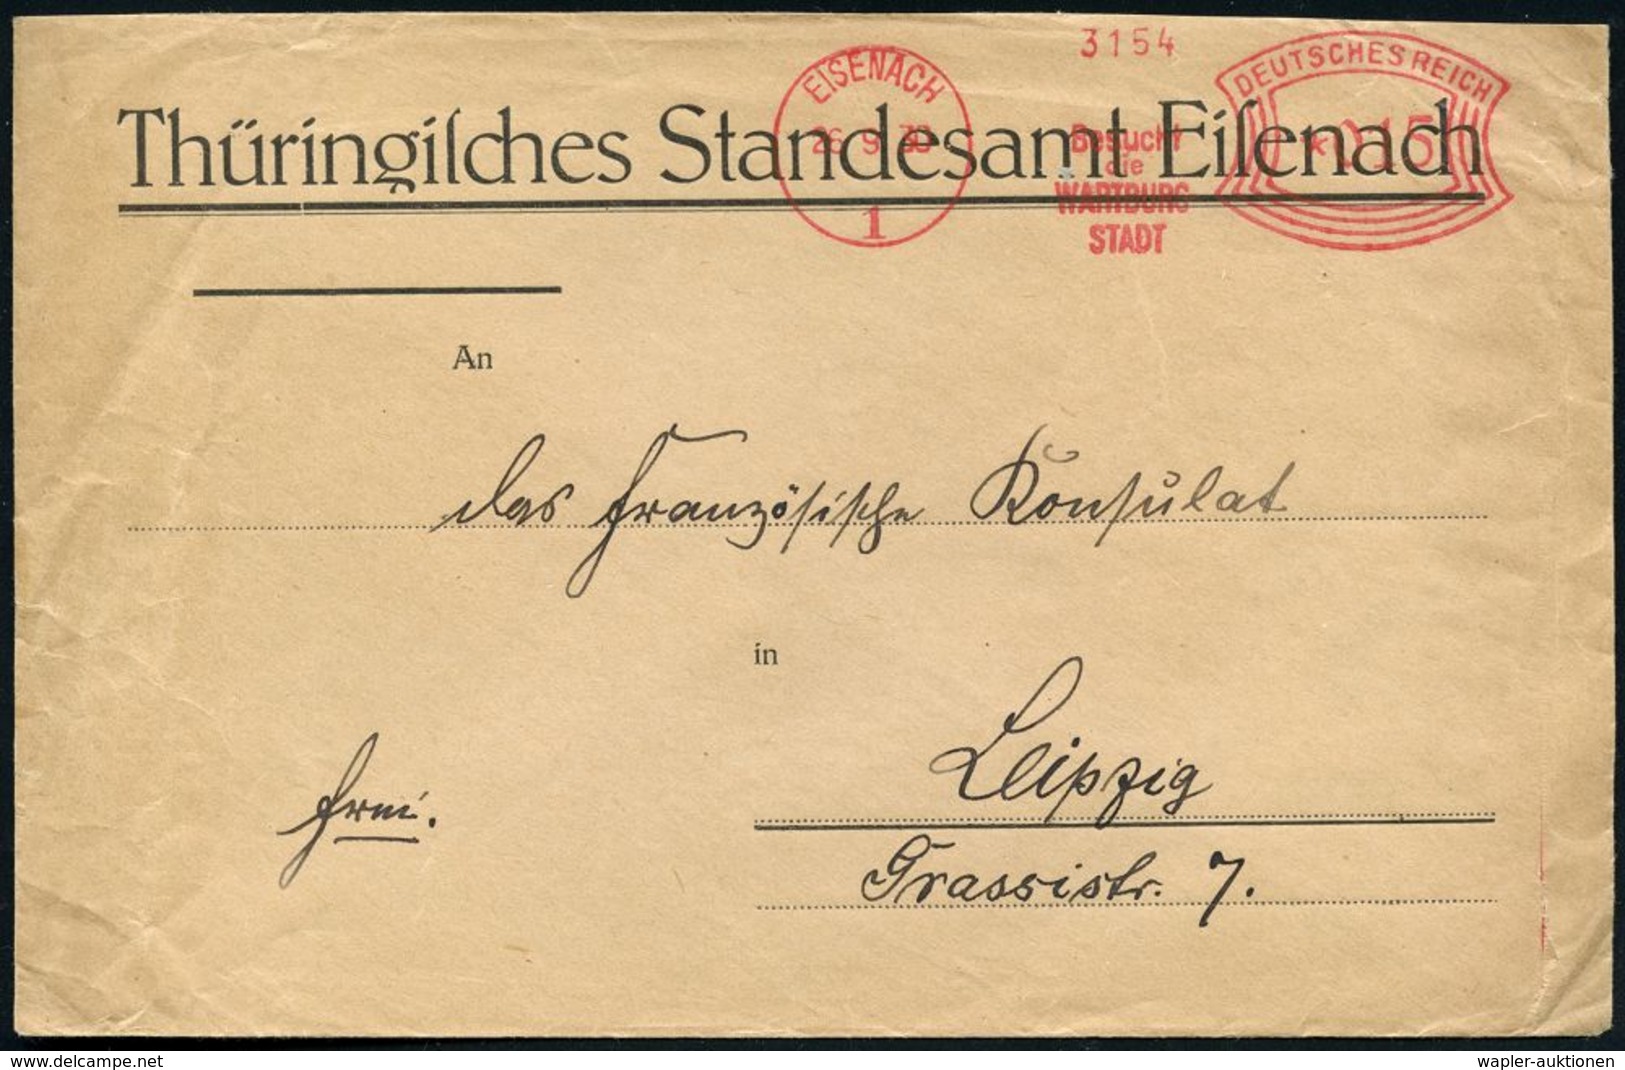 EISENACH/ 1/ Besucht/ Die/ WARTBURG/ STADT 1930 (26.9.) Seltener AFS Auf Kommunal-Bf.: Thüring. Standesamt Eisenach, Rs. - Christianisme